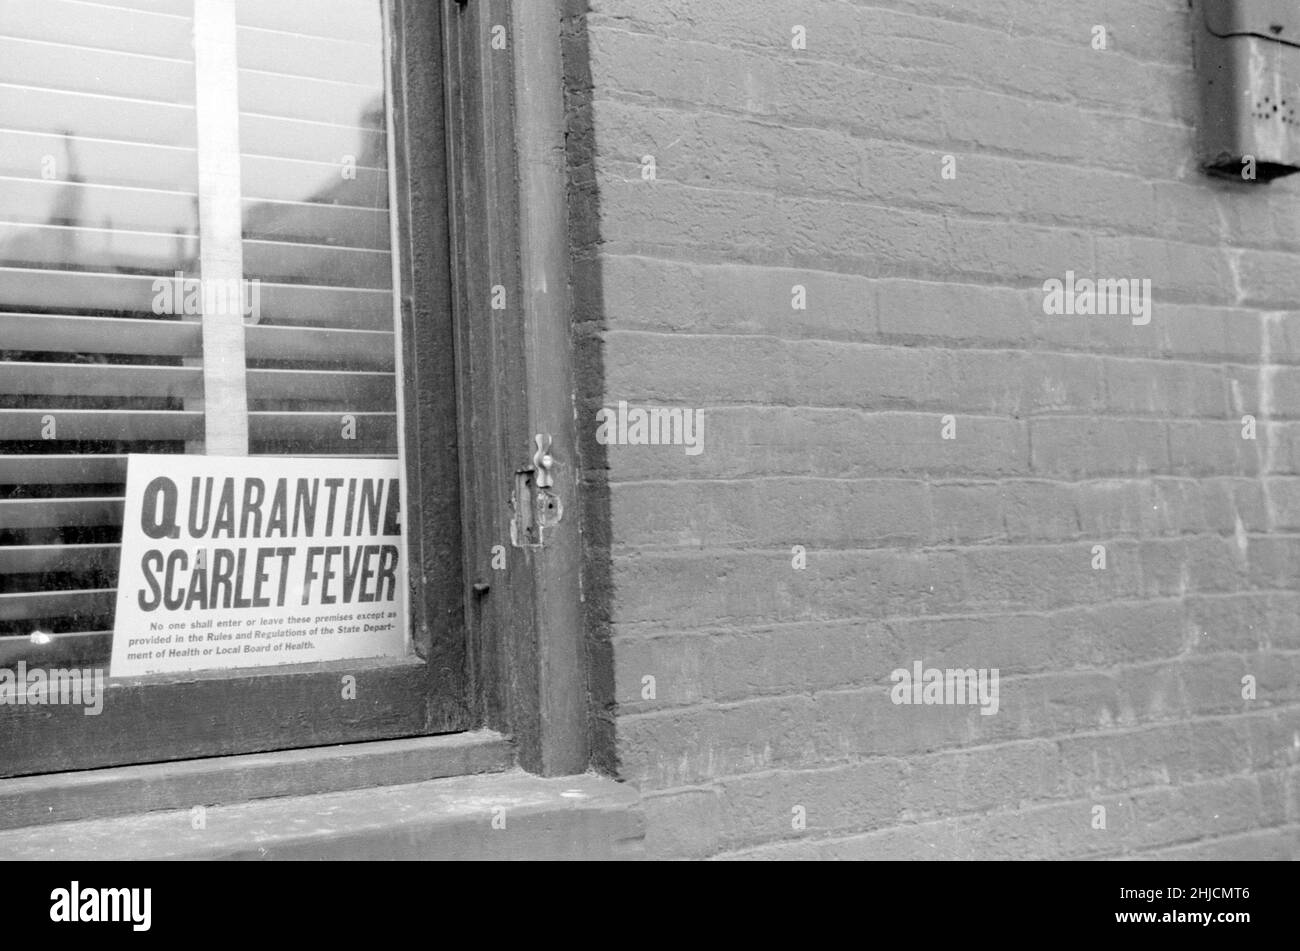 Un signe de quarantaine de la fièvre écarlate dans une fenêtre, Dubuque, Iowa, États-Unis, avril 1940.John Vachon, 1914-1975, photographe. Banque D'Images